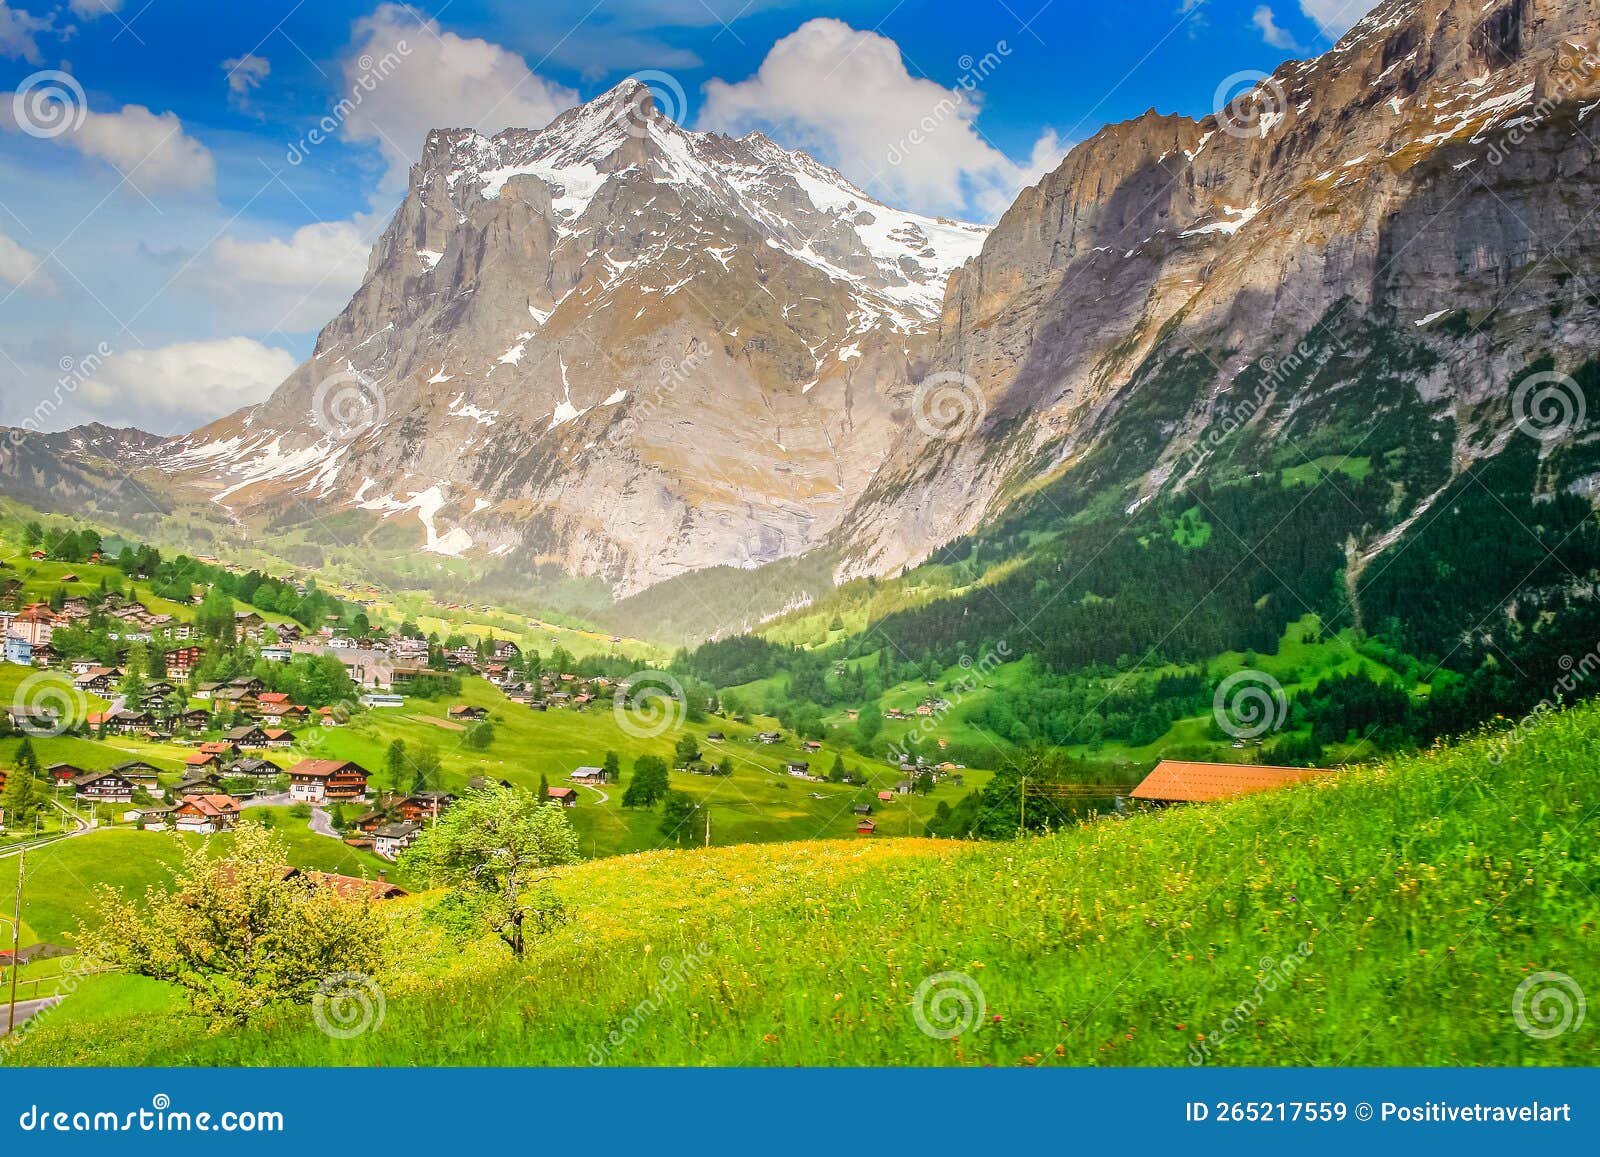 Grindelwald Alpine Village Near Interlaken In The Canton Of Bern Swiss